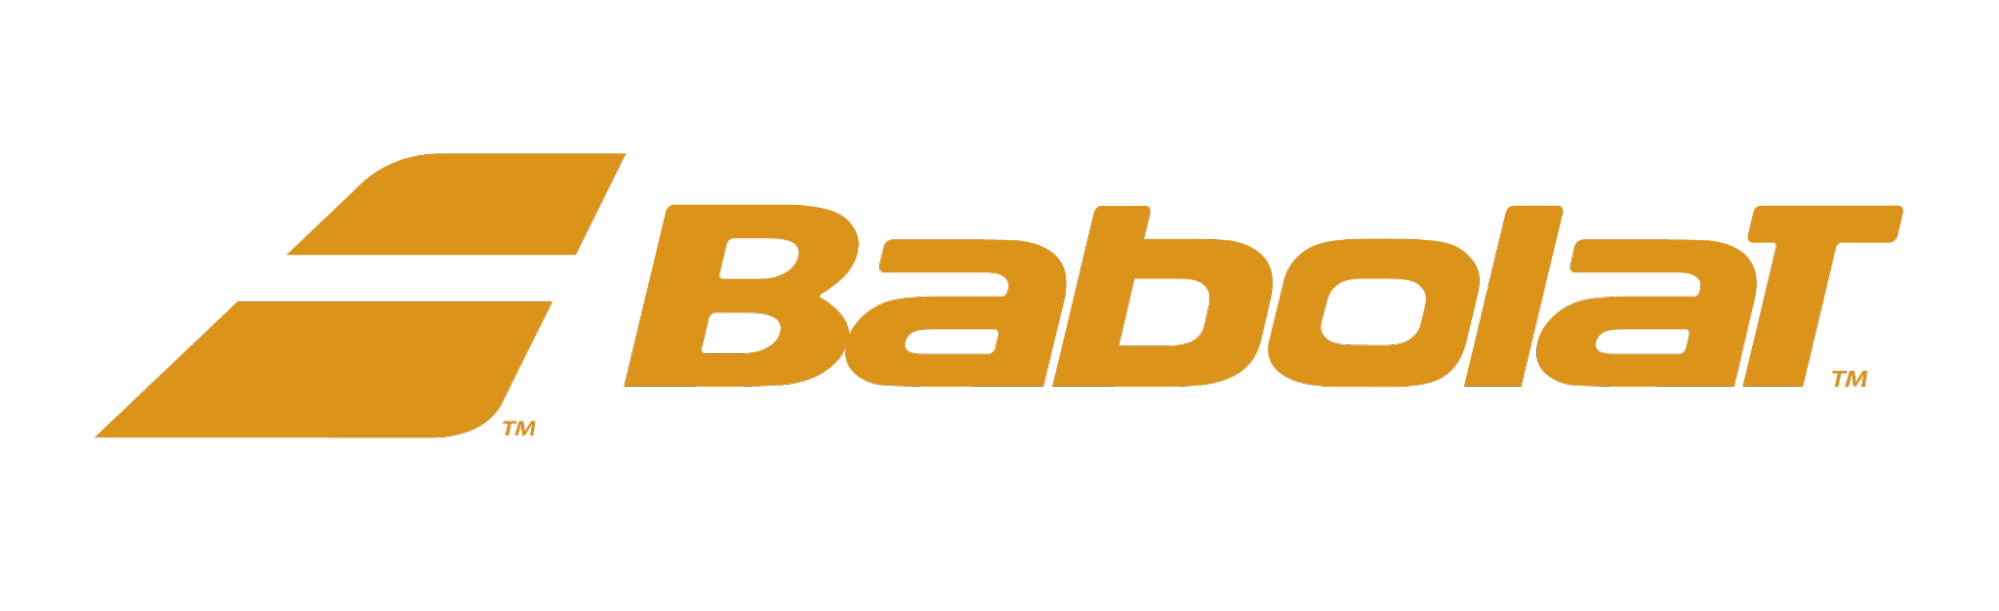 Logo Brand Name vợt cầu lông Babolat